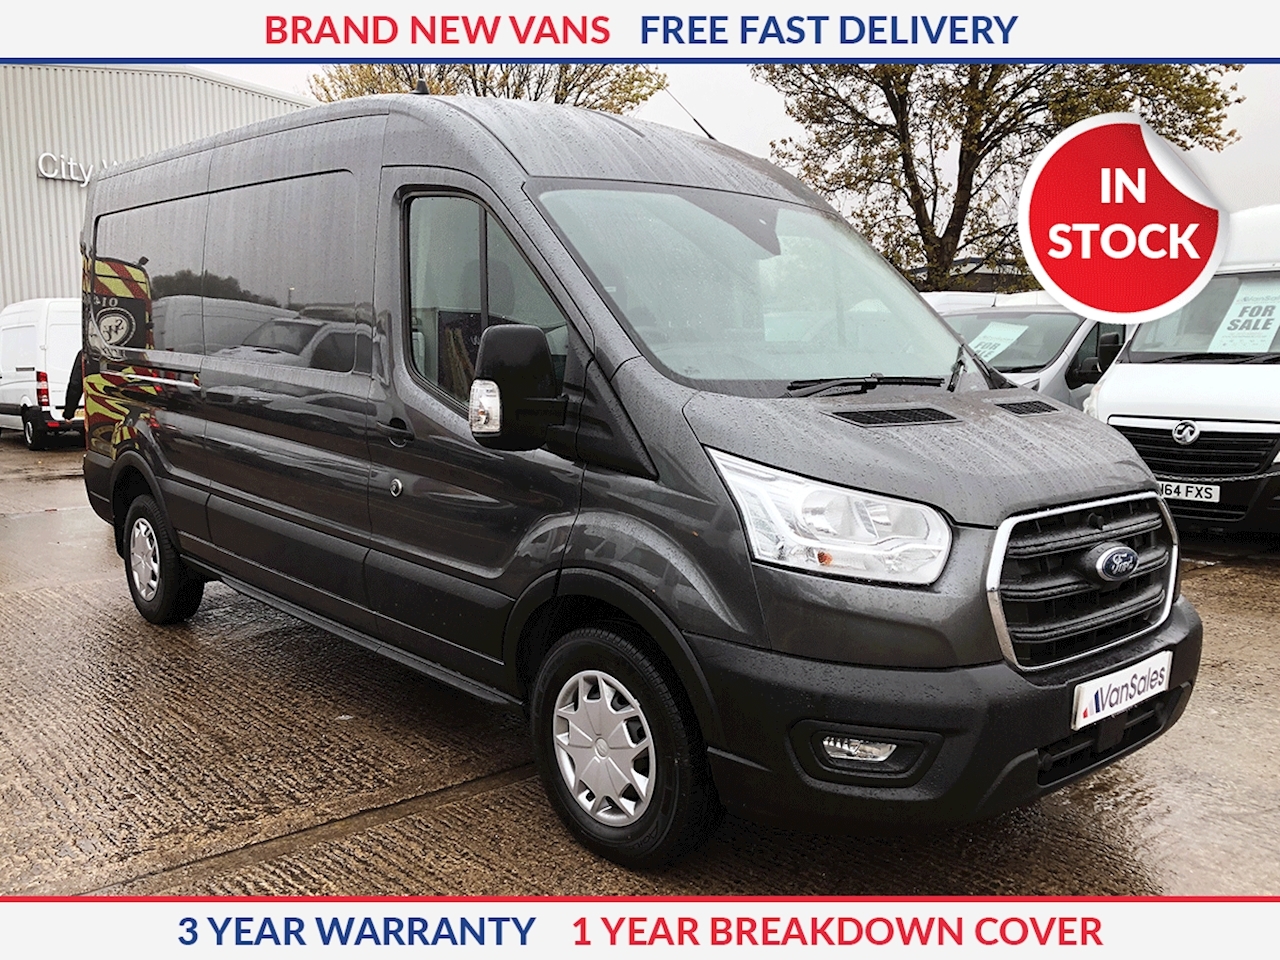 large vans for sale uk